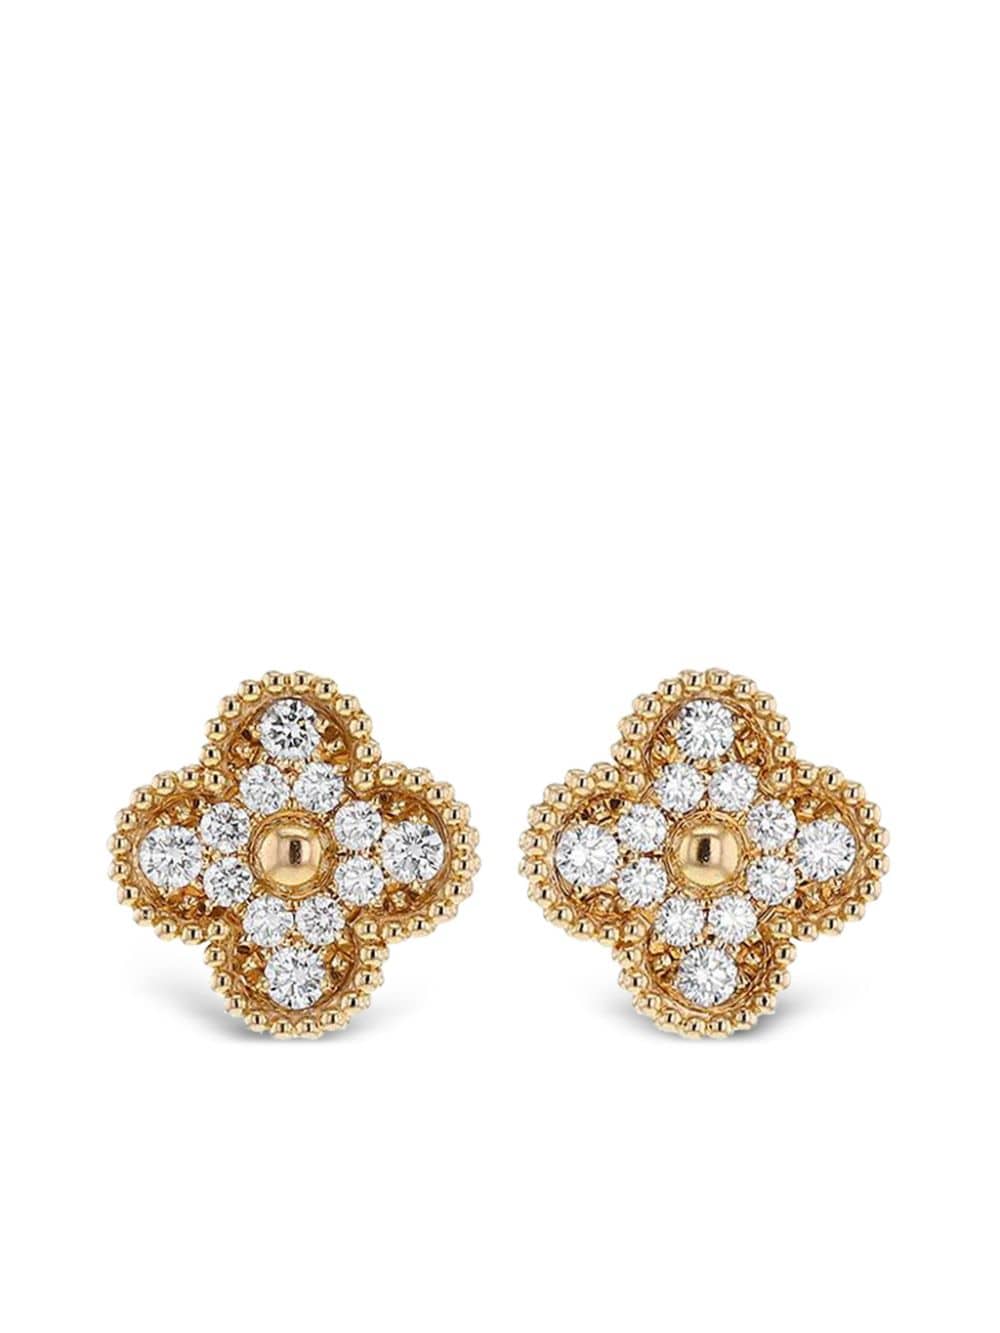 2020s 18kt rose gold Alhambra diamond earrings